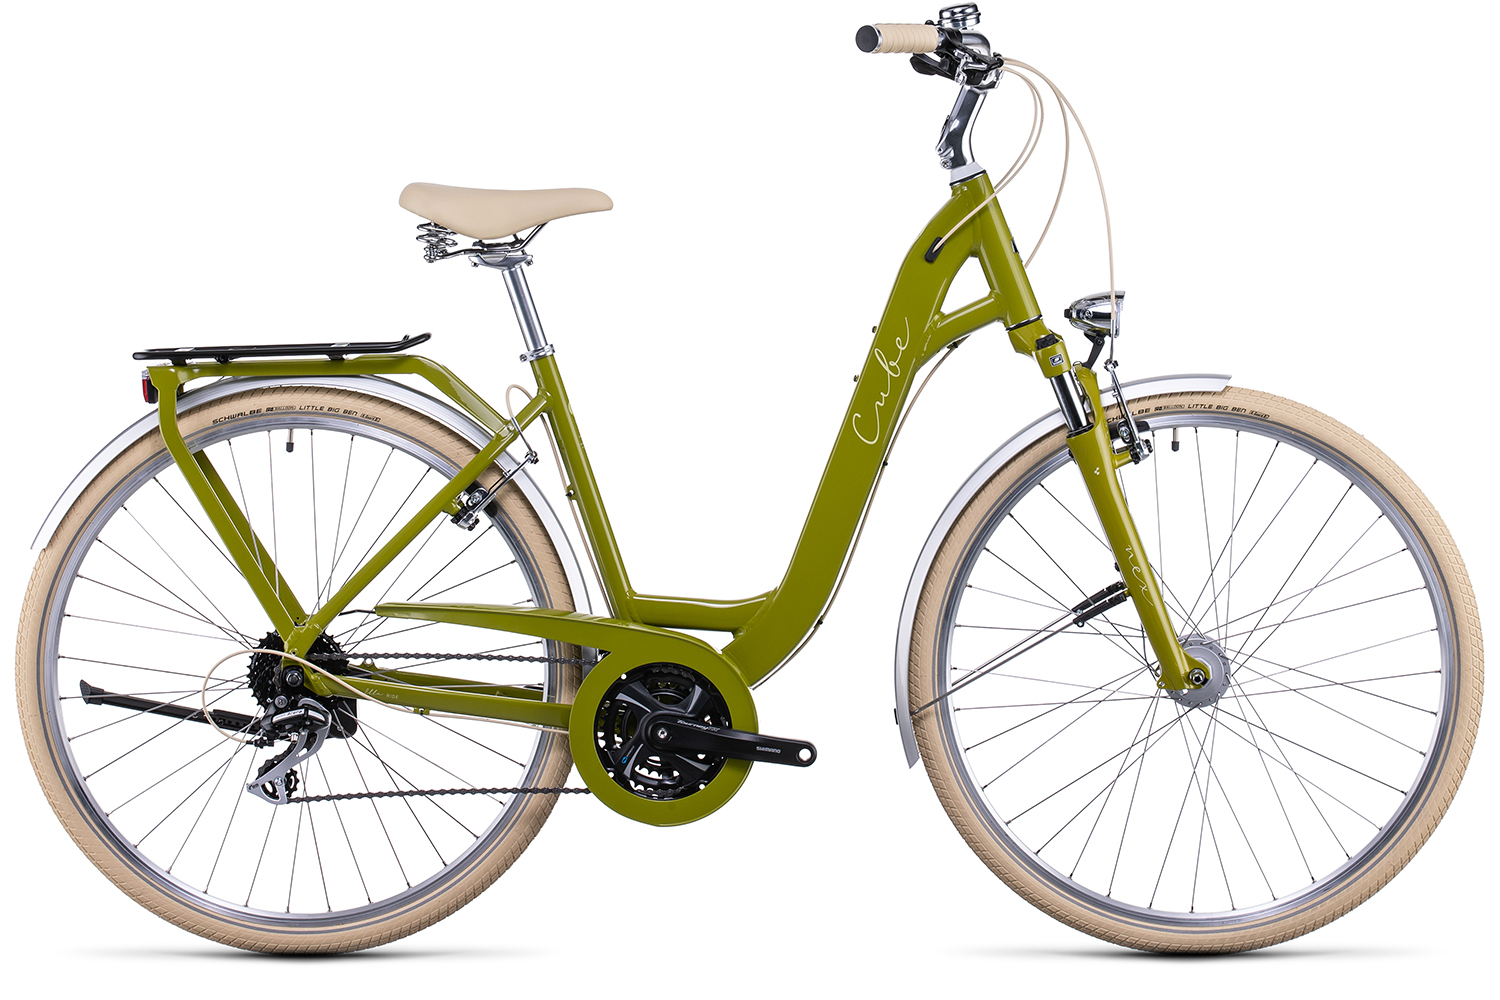  Отзывы о Женском велосипеде Cube Ella Ride 2022